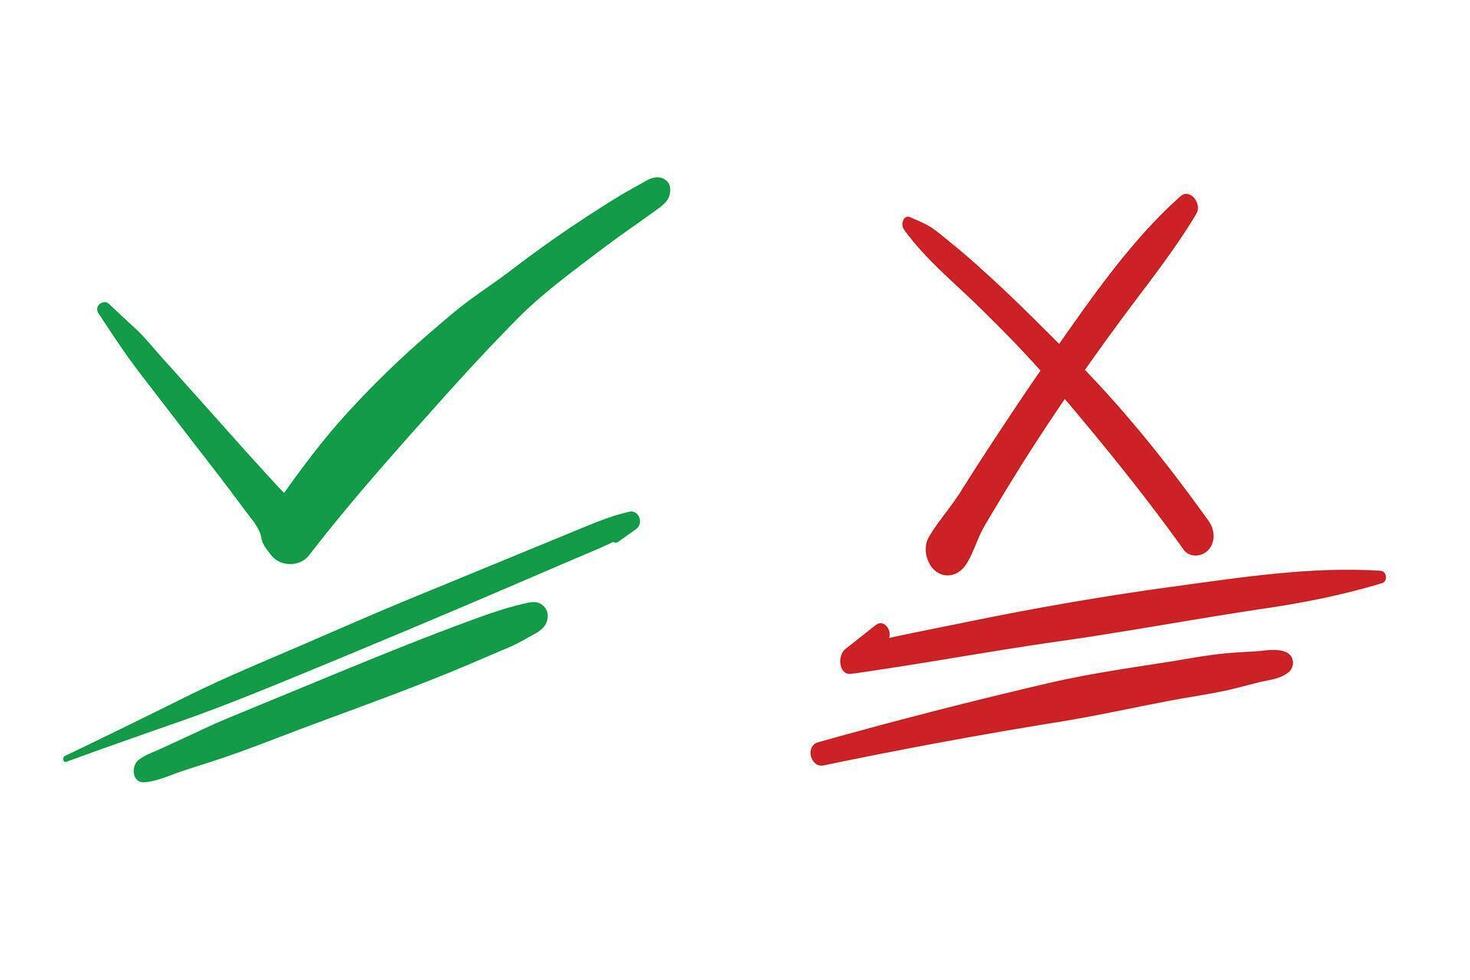 mano dibujado conjunto de mano dibujado verde cheque marca y rojo cruzar marca aislado vector ilustración.